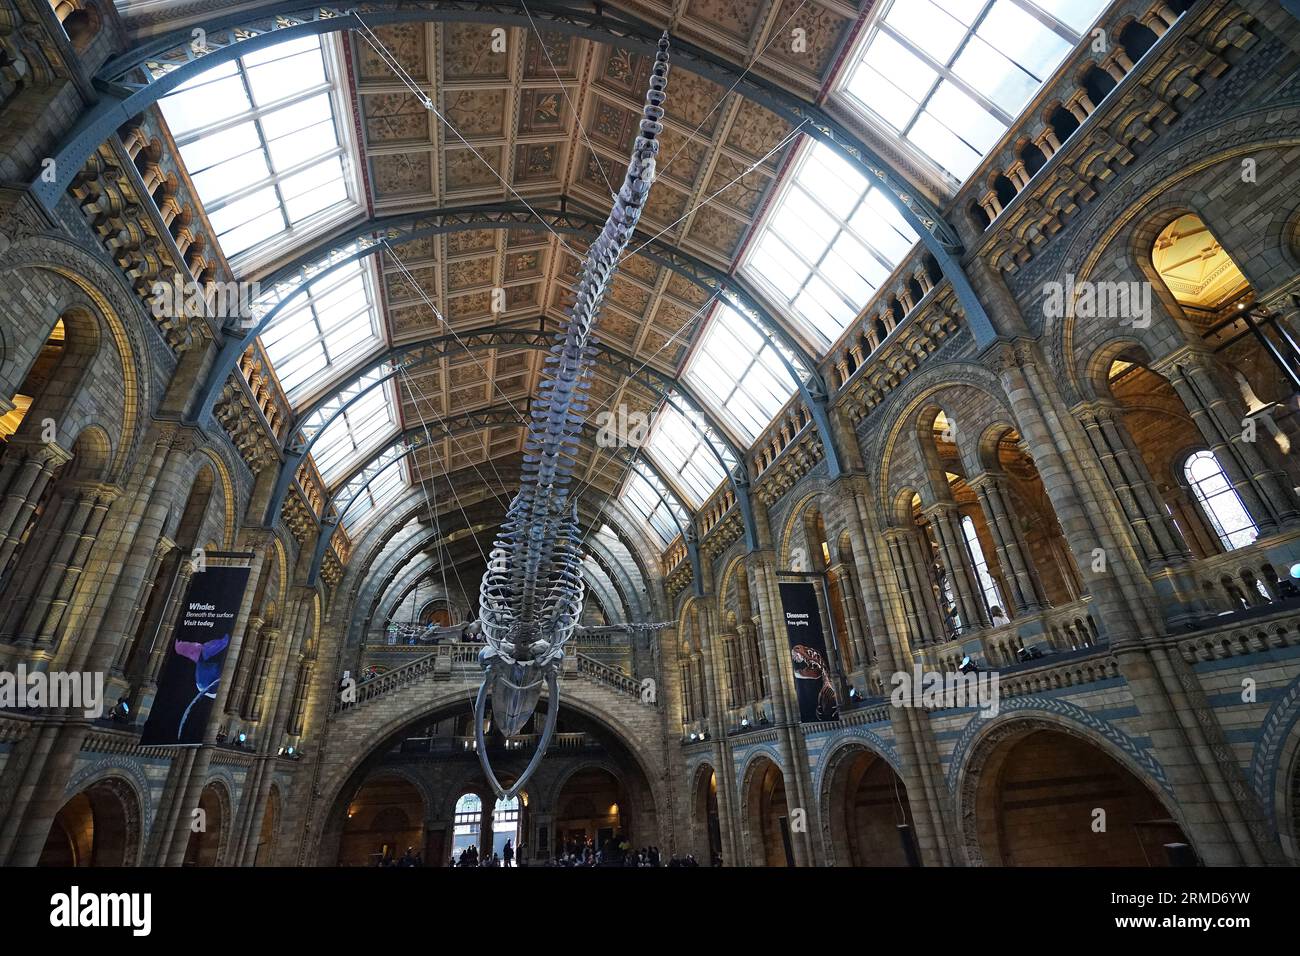 Blauwal-Skelett namens „HOPE“ im Natural History Museum, dem britischen Zentrum für Exzellenz-Sammlungen im Bereich Taxonomie und Biodiversität Stockfoto